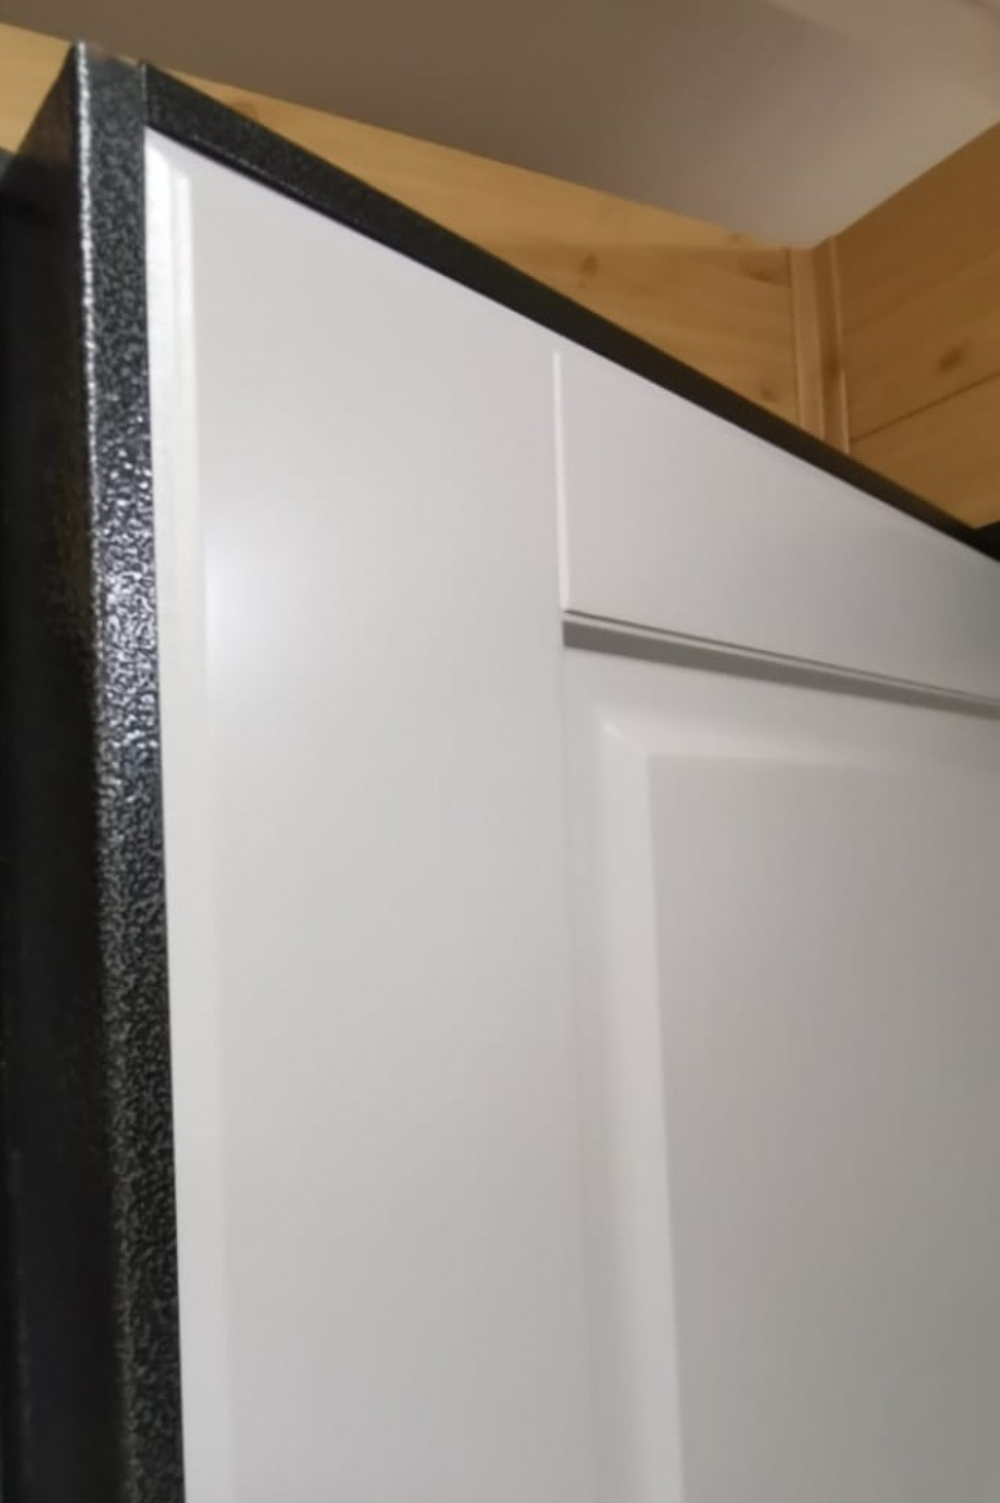 Входная дверь Тефлон 3К черный кварц / Стокгольм белый матовый, без текстуры. ТМ Заводские двери, г.Йошкар-Ола